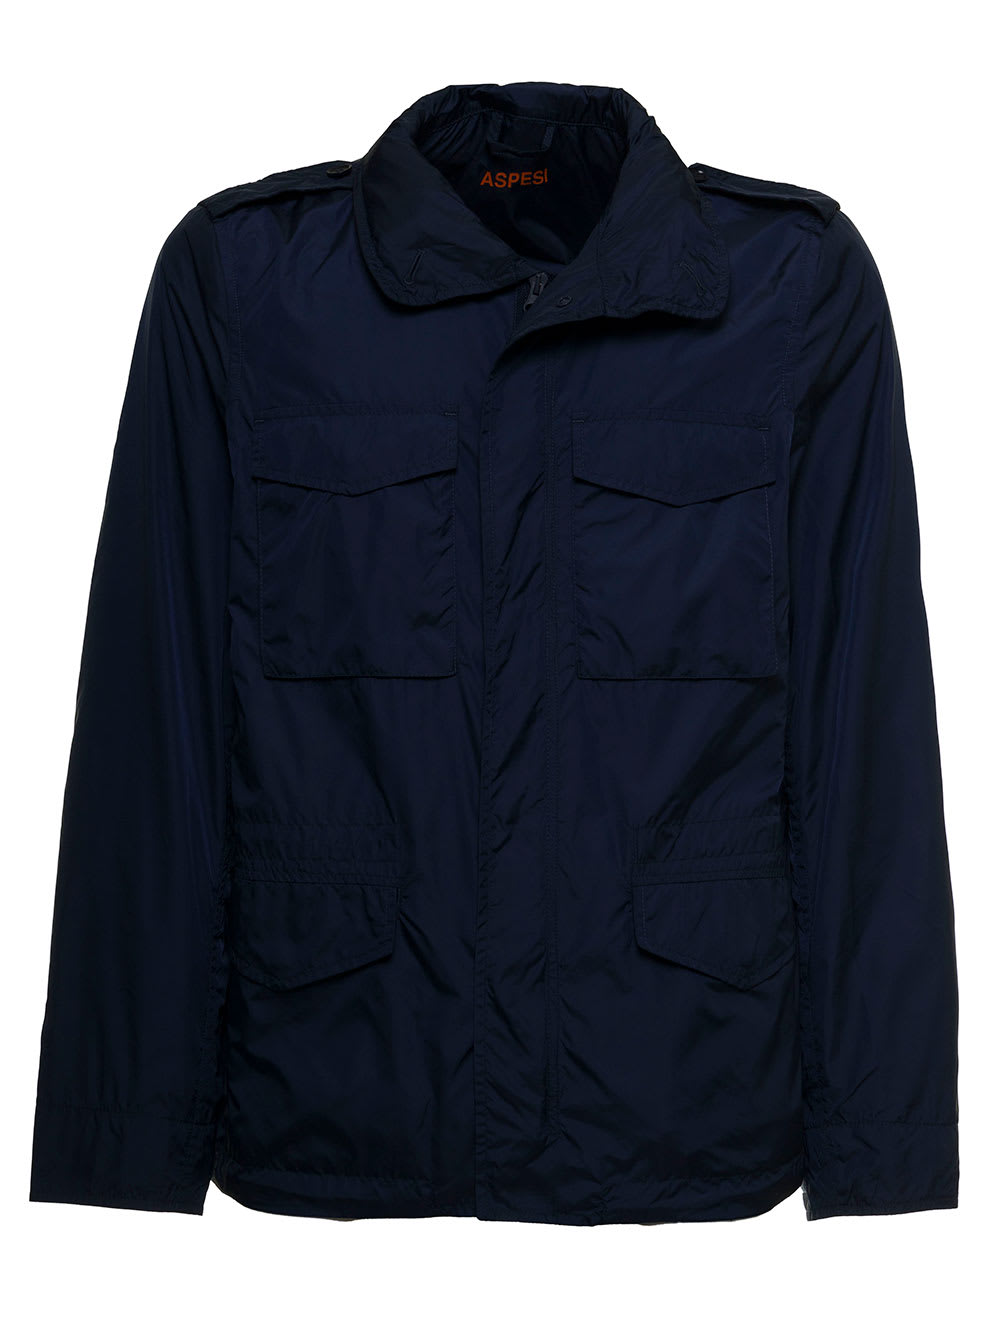 Aspesi Blue Nylon Jacket With Pockets